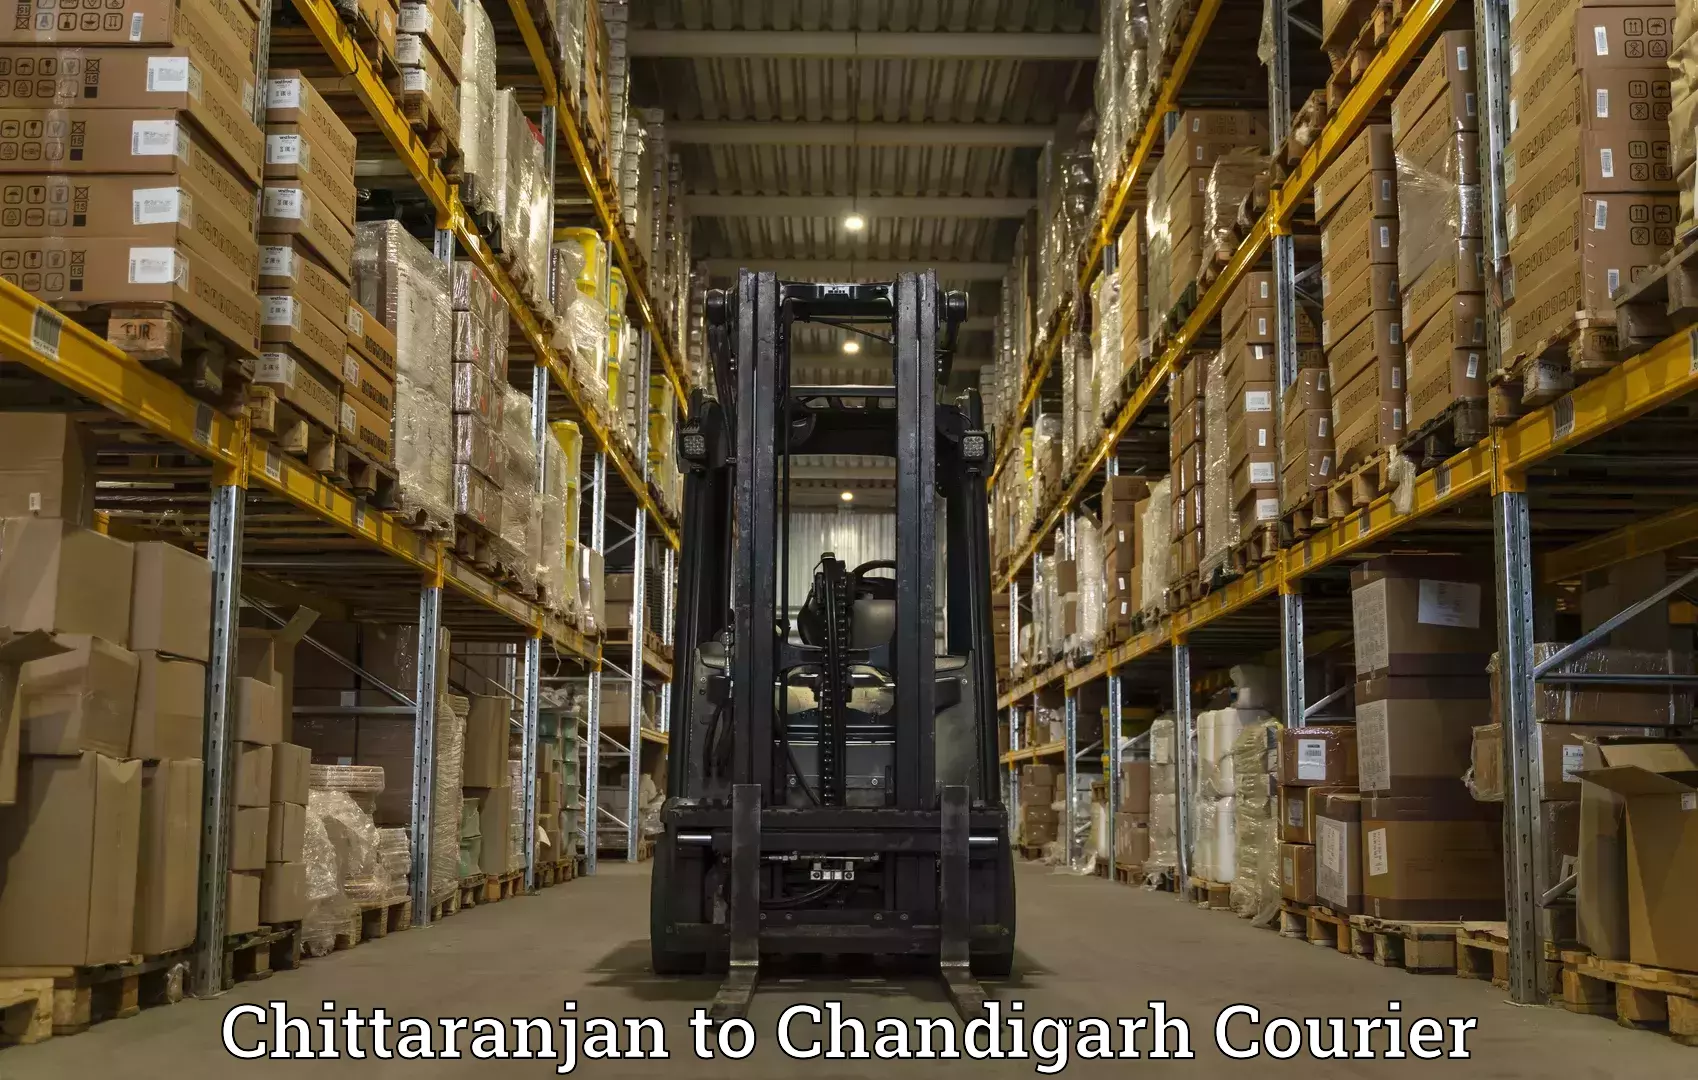 Multi-city courier Chittaranjan to Chandigarh